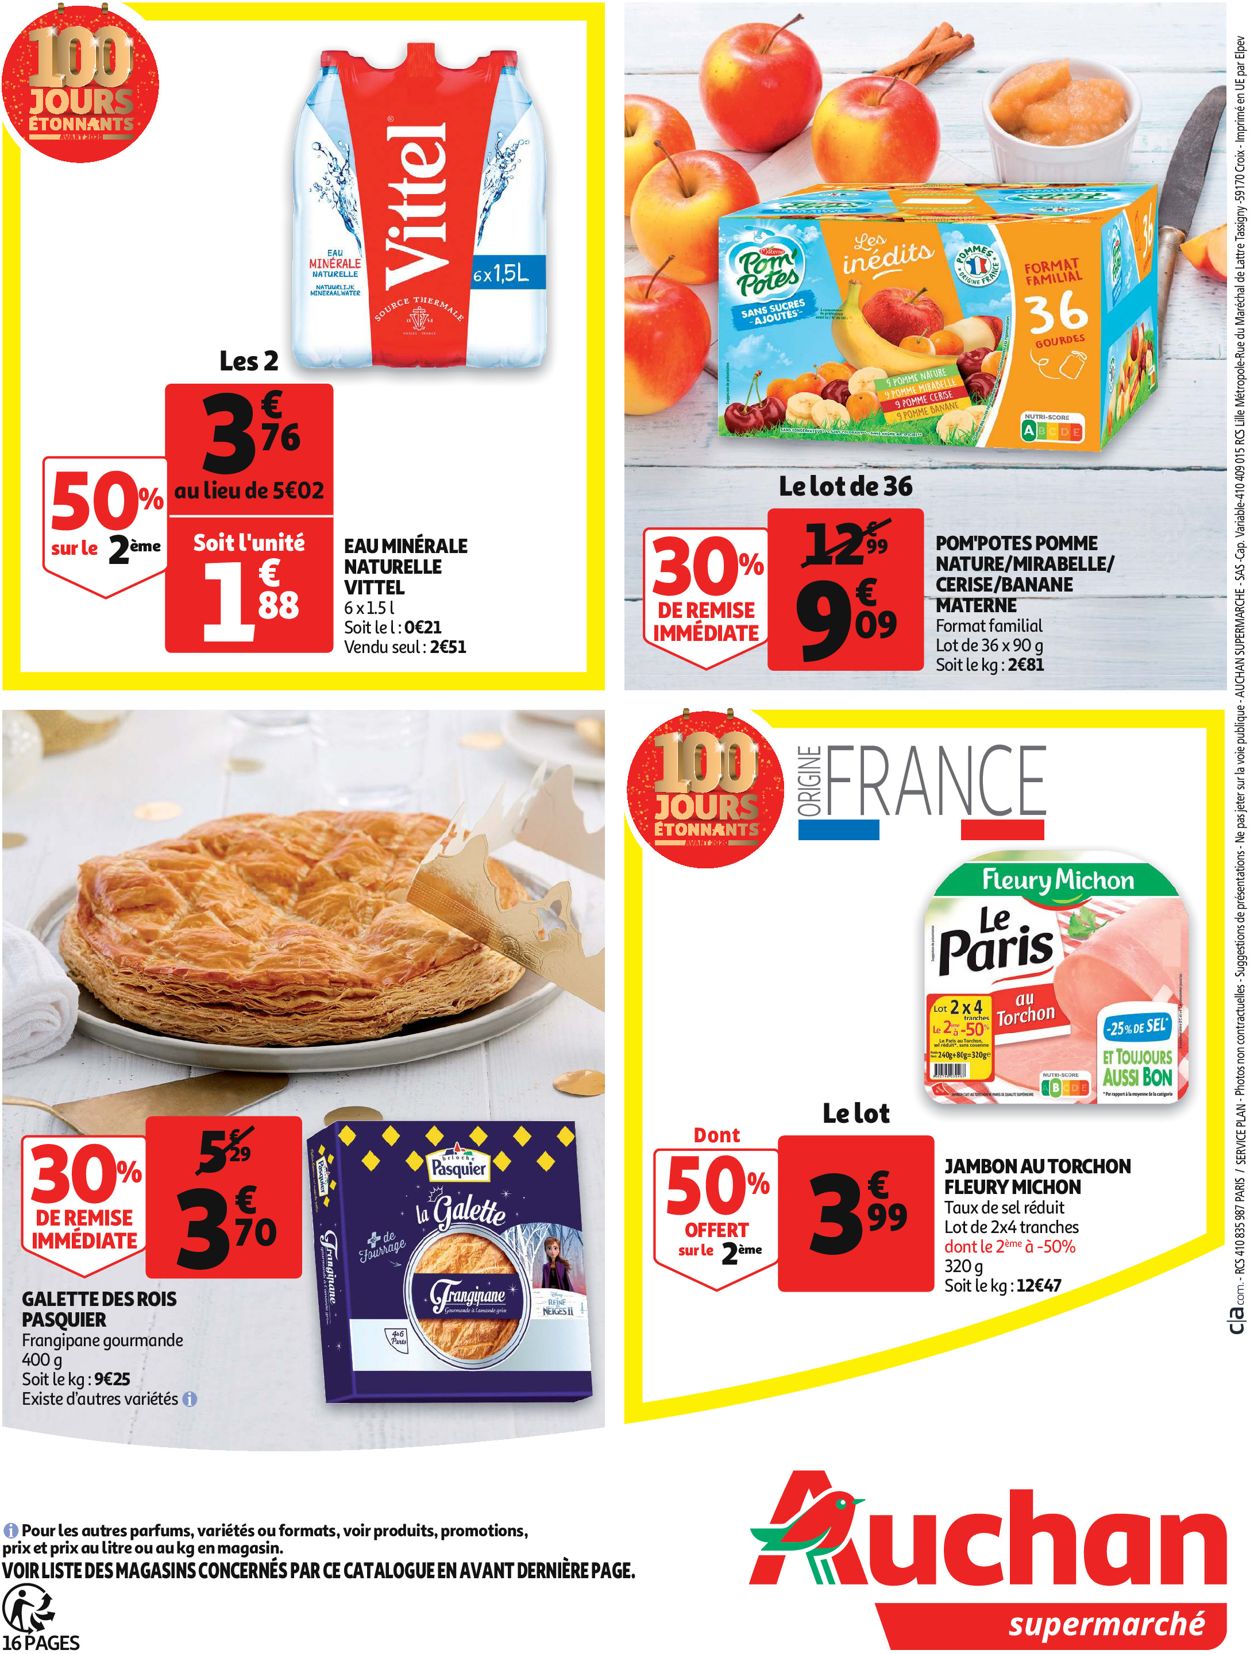 Auchan - Catalogue du Nouvel An Catalogue - 26.12-31.12.2019 (Page 16)